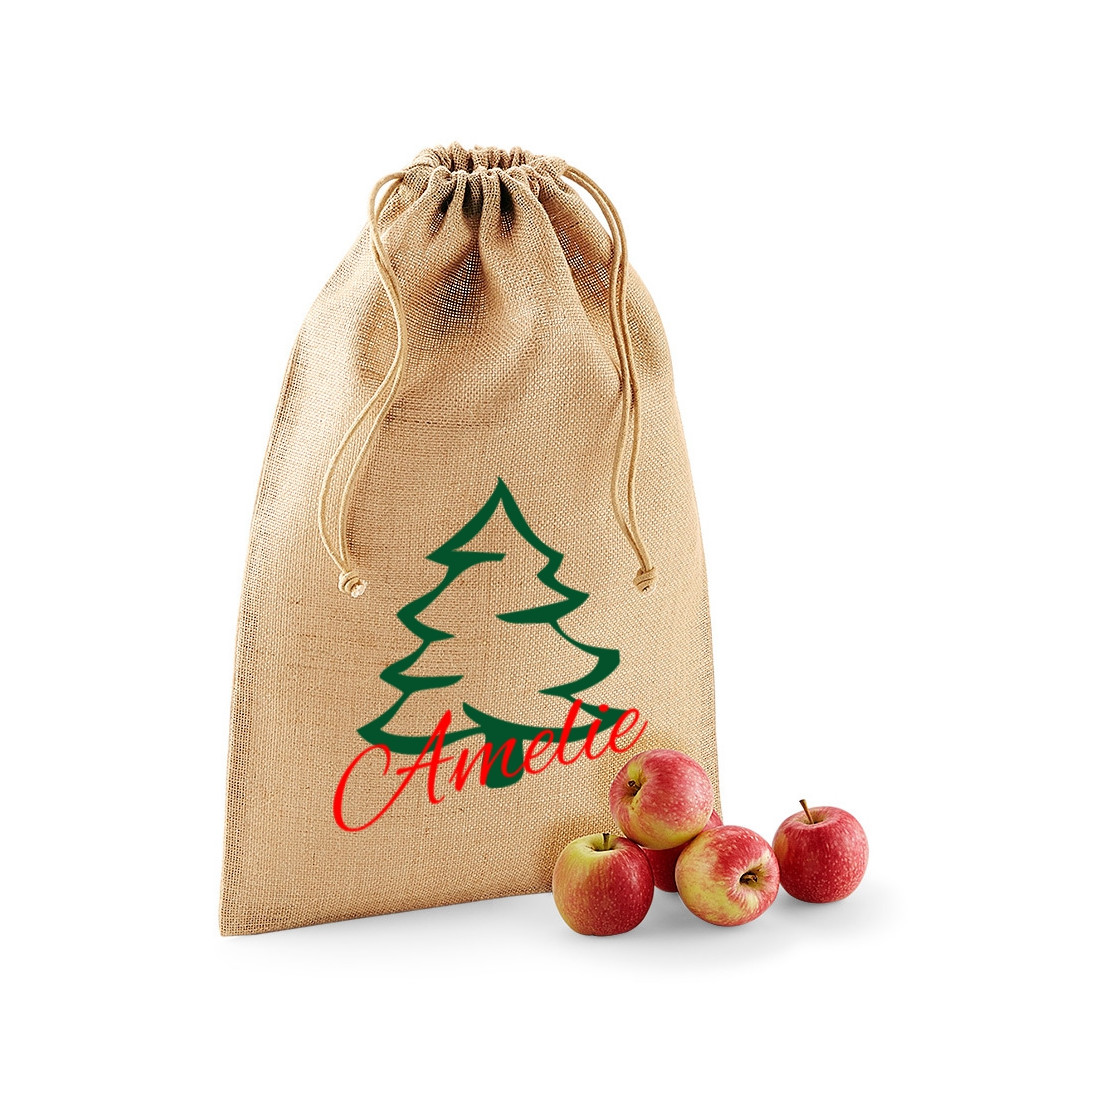 Jutesäckchen für Weihnachten | Tannenbaum mit Name, 8,99 €